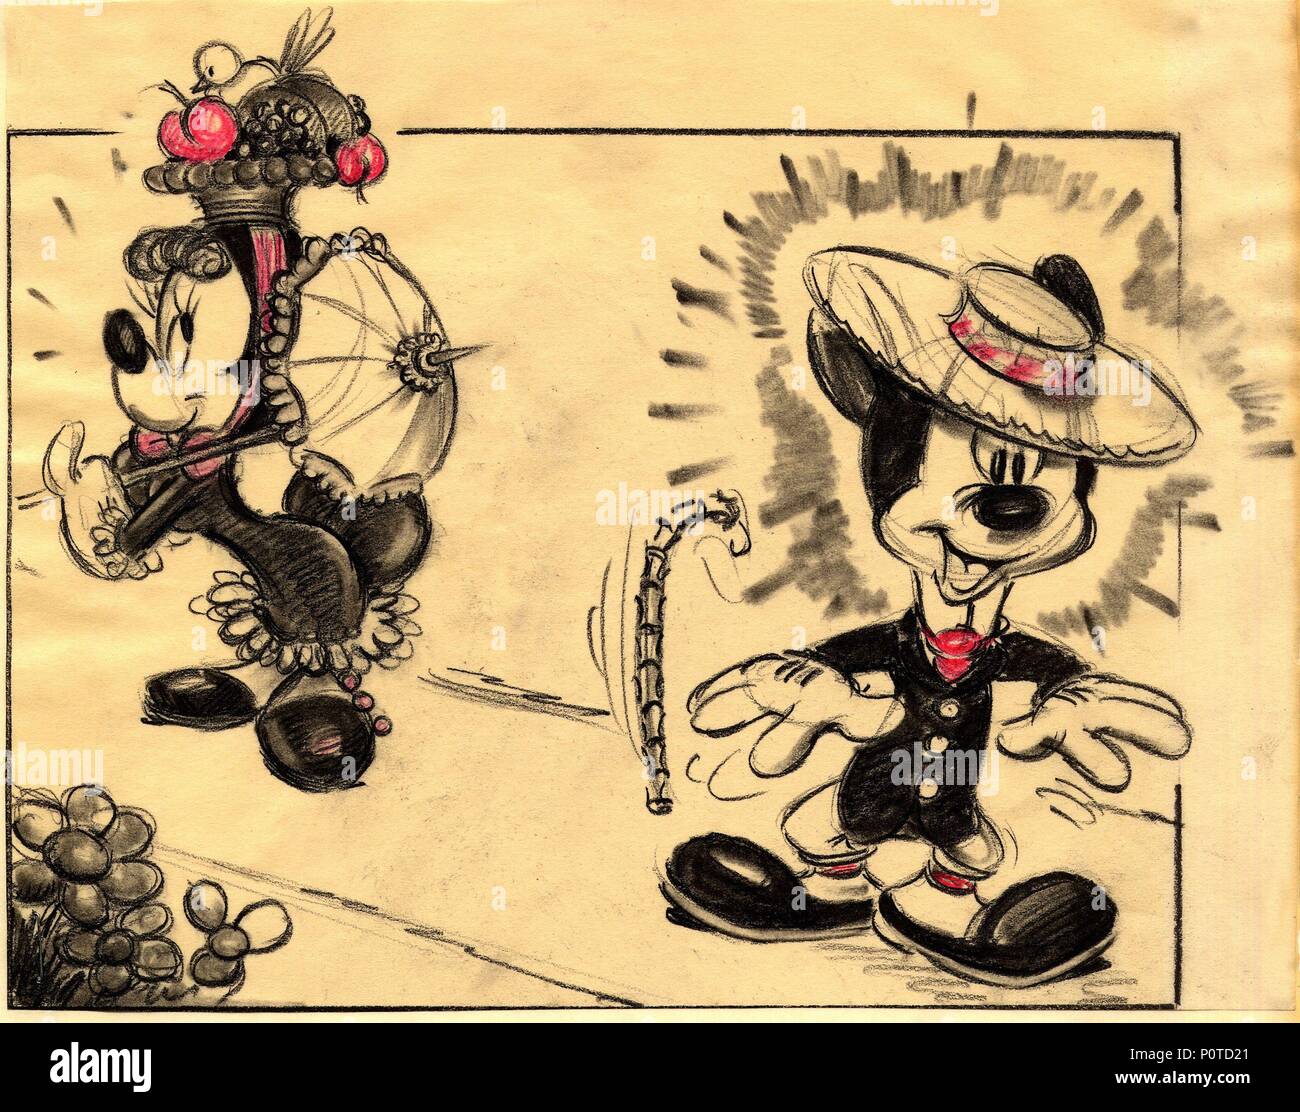 Verde sinsonte instructor Descripción: un boceto de Mickey Mouse. El título de la película original:  MISC: Mickey Mouse. Título en inglés: MISC: Mickey Mouse. Año: 0.  Estrellas: Mickey Mouse. Crédito: Walt Disney Pictures / Álbum